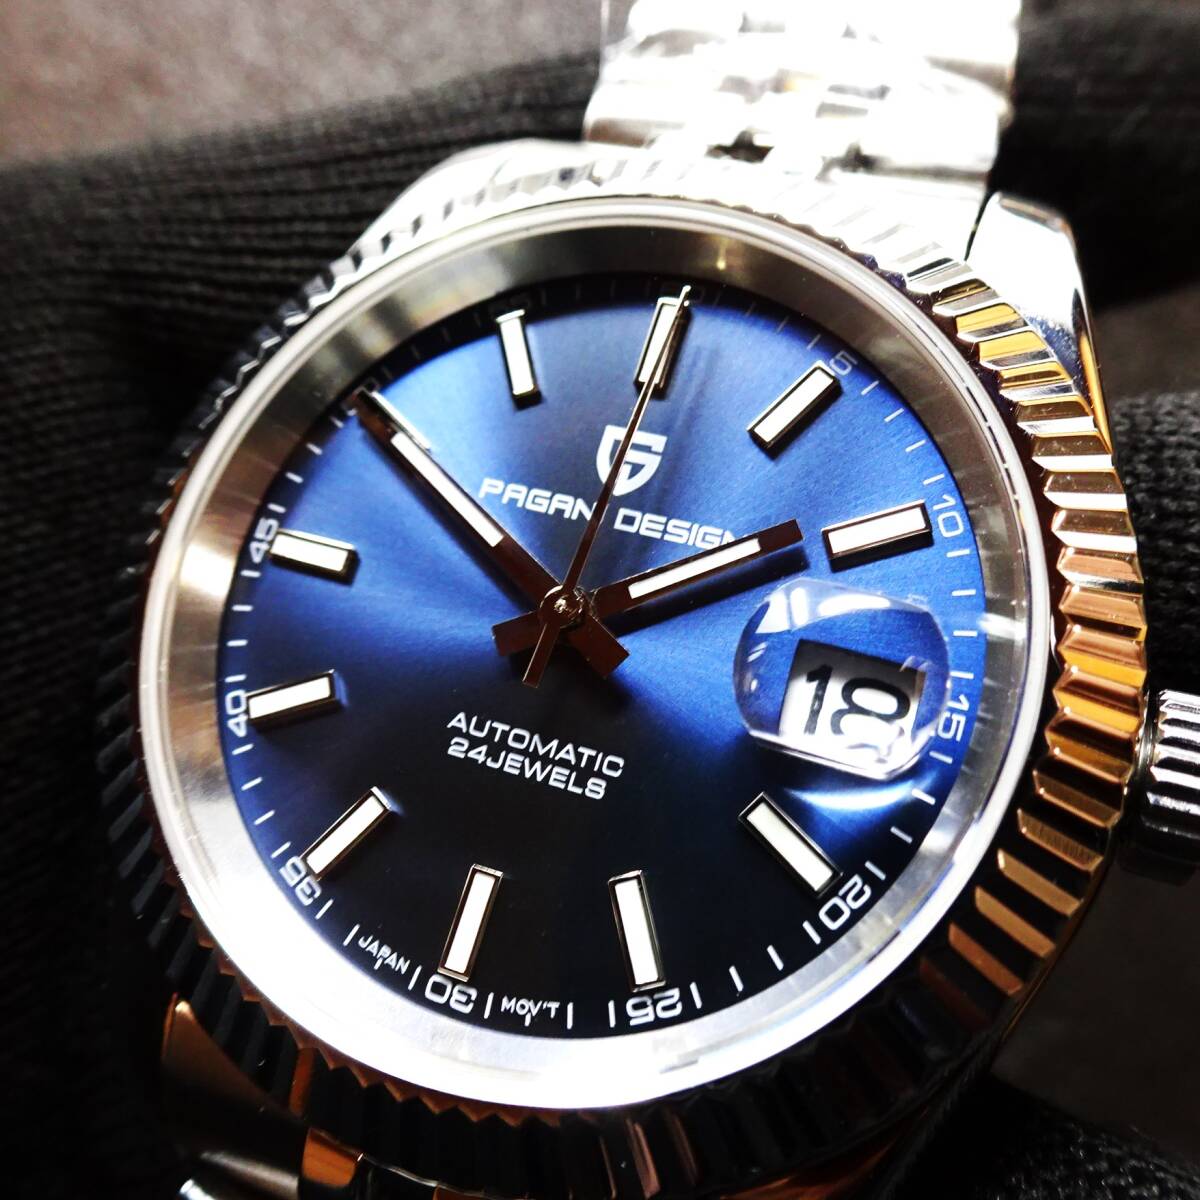 送料無料・新品〓 PAGANI DESIGN・パガーニデザイン・オマージュウォッチ腕時計 機械式NH35Ａ・ PD-1645・315Lフルステンレス製・ブルーの画像2